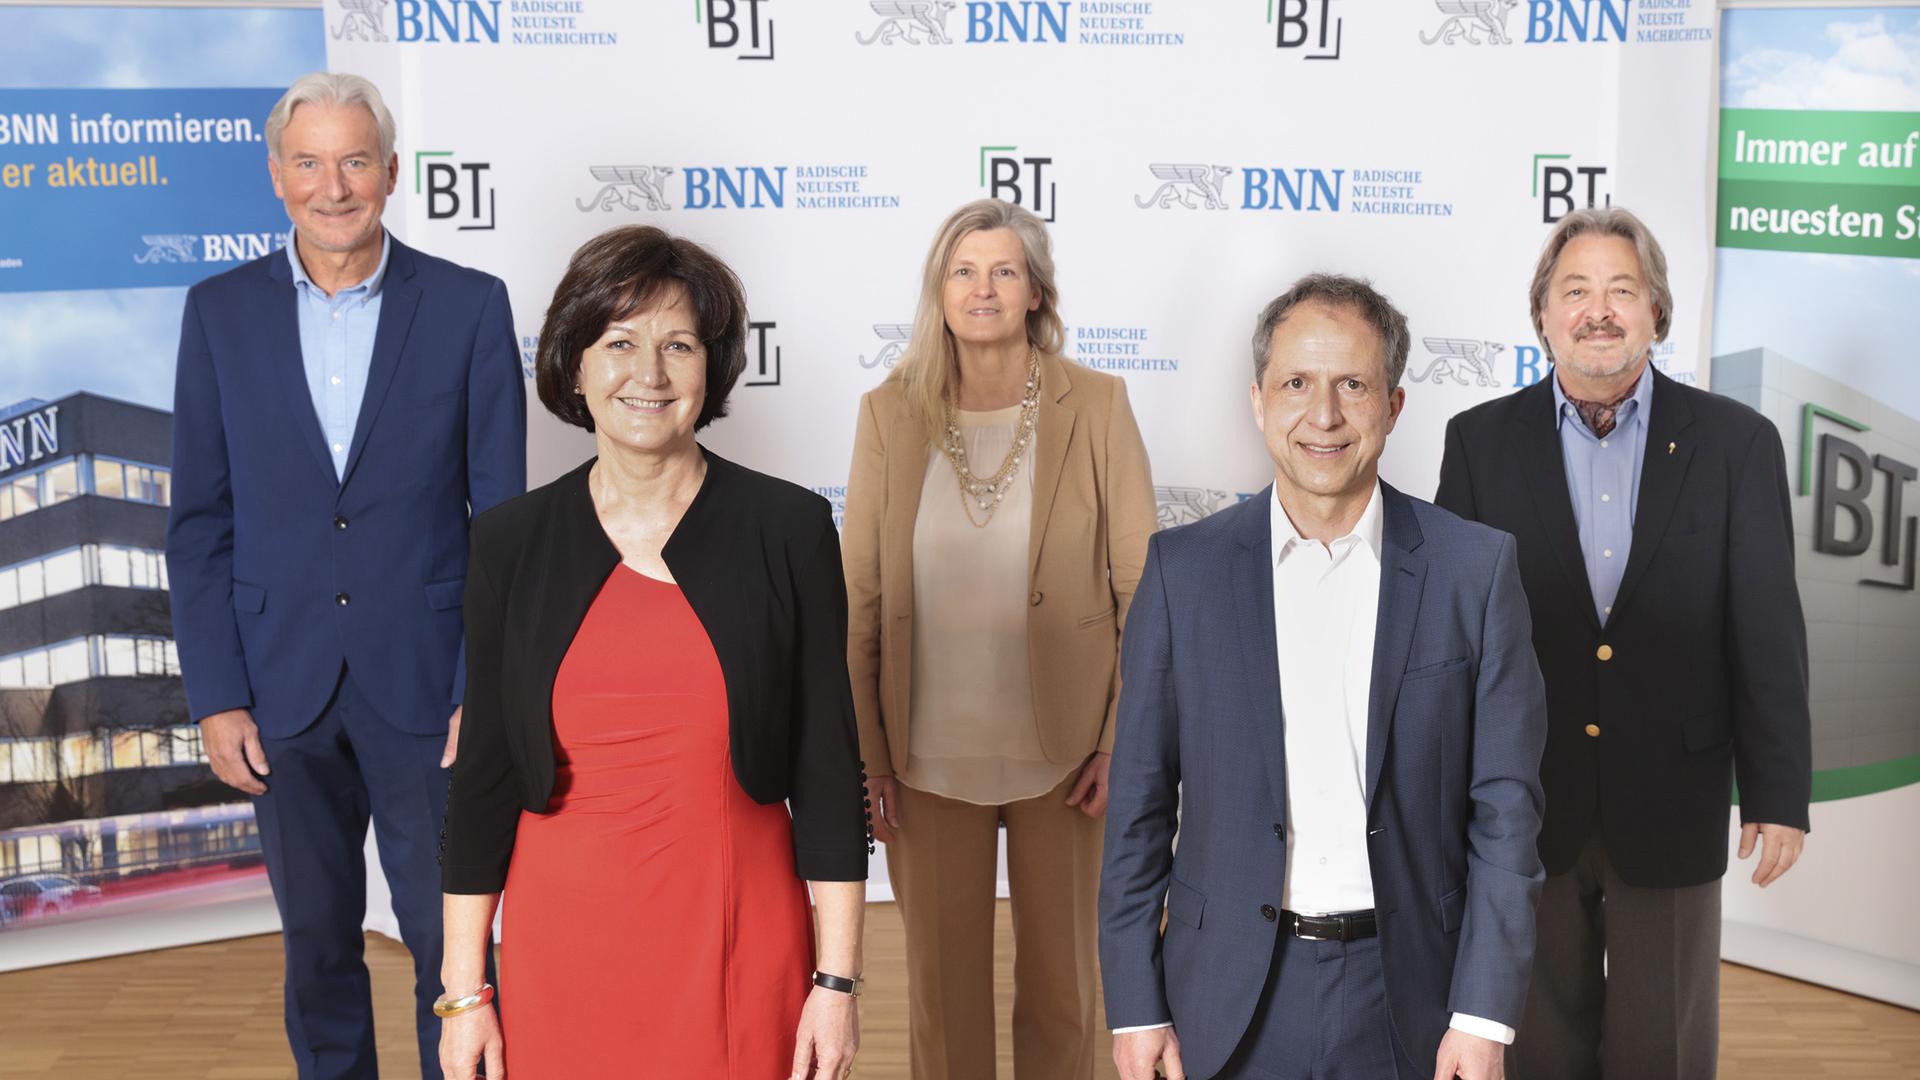 Die fünf Kandidaten beim BNN/BT-Wahlforum im BT-Verlagsgebäude in Baden-Baden. Von links: Dietmar Späth, Margret Mergen, Bettina Morlok, Roland Kaiser und Rolf Pilarski.